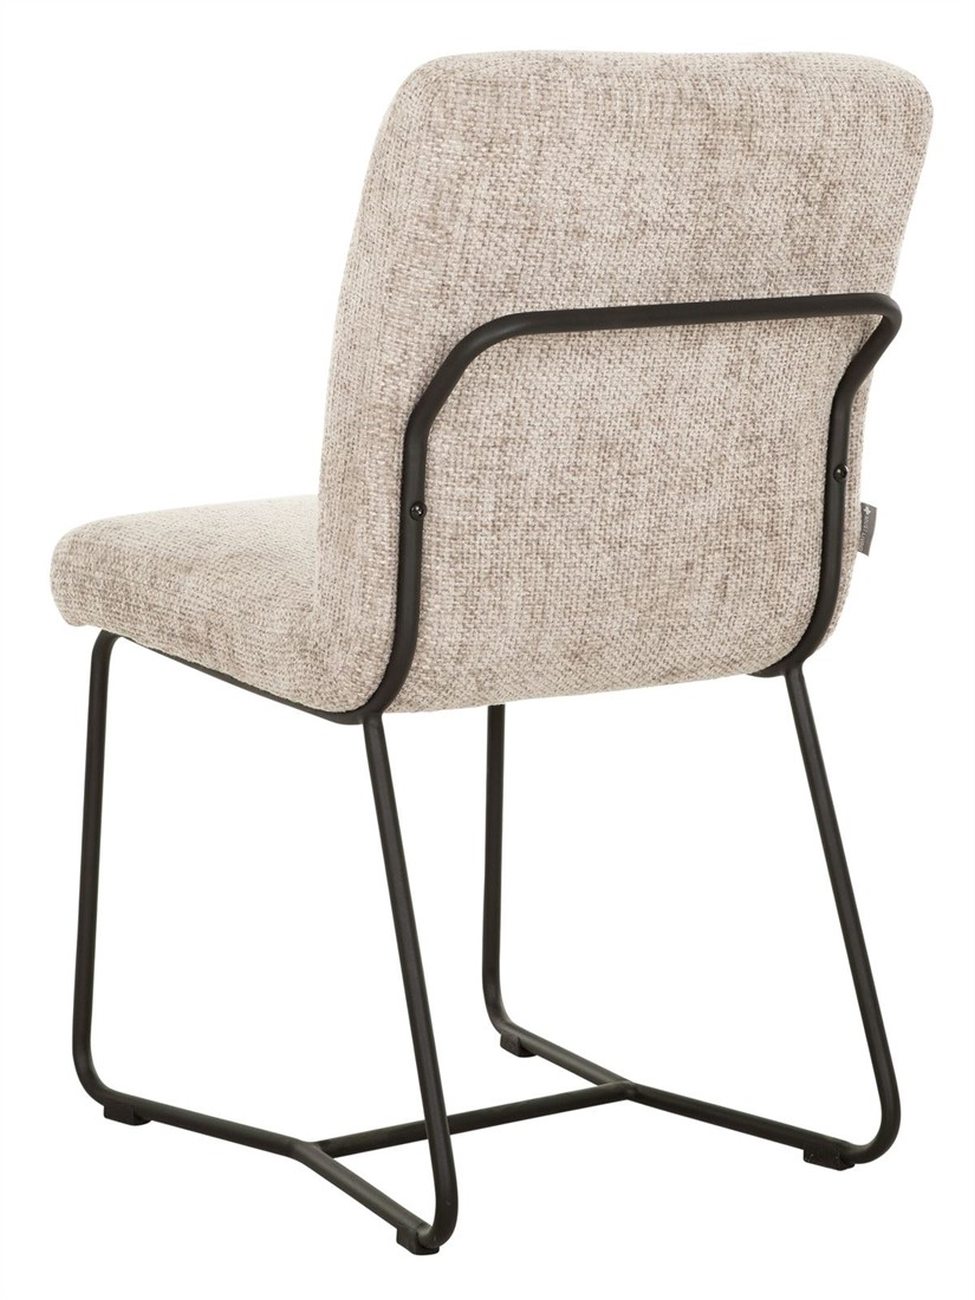 Der Esszimmerstuhl Zola überzeugt mit seinem modernen Design. Gefertigt wurde er aus Stoff, welcher einen Sand Farbton besitzt. Das Gestell ist aus Metall und hat eine schwarze Farbe. Der Stuhl besitzt eine Größe von 87x46x56 cm.